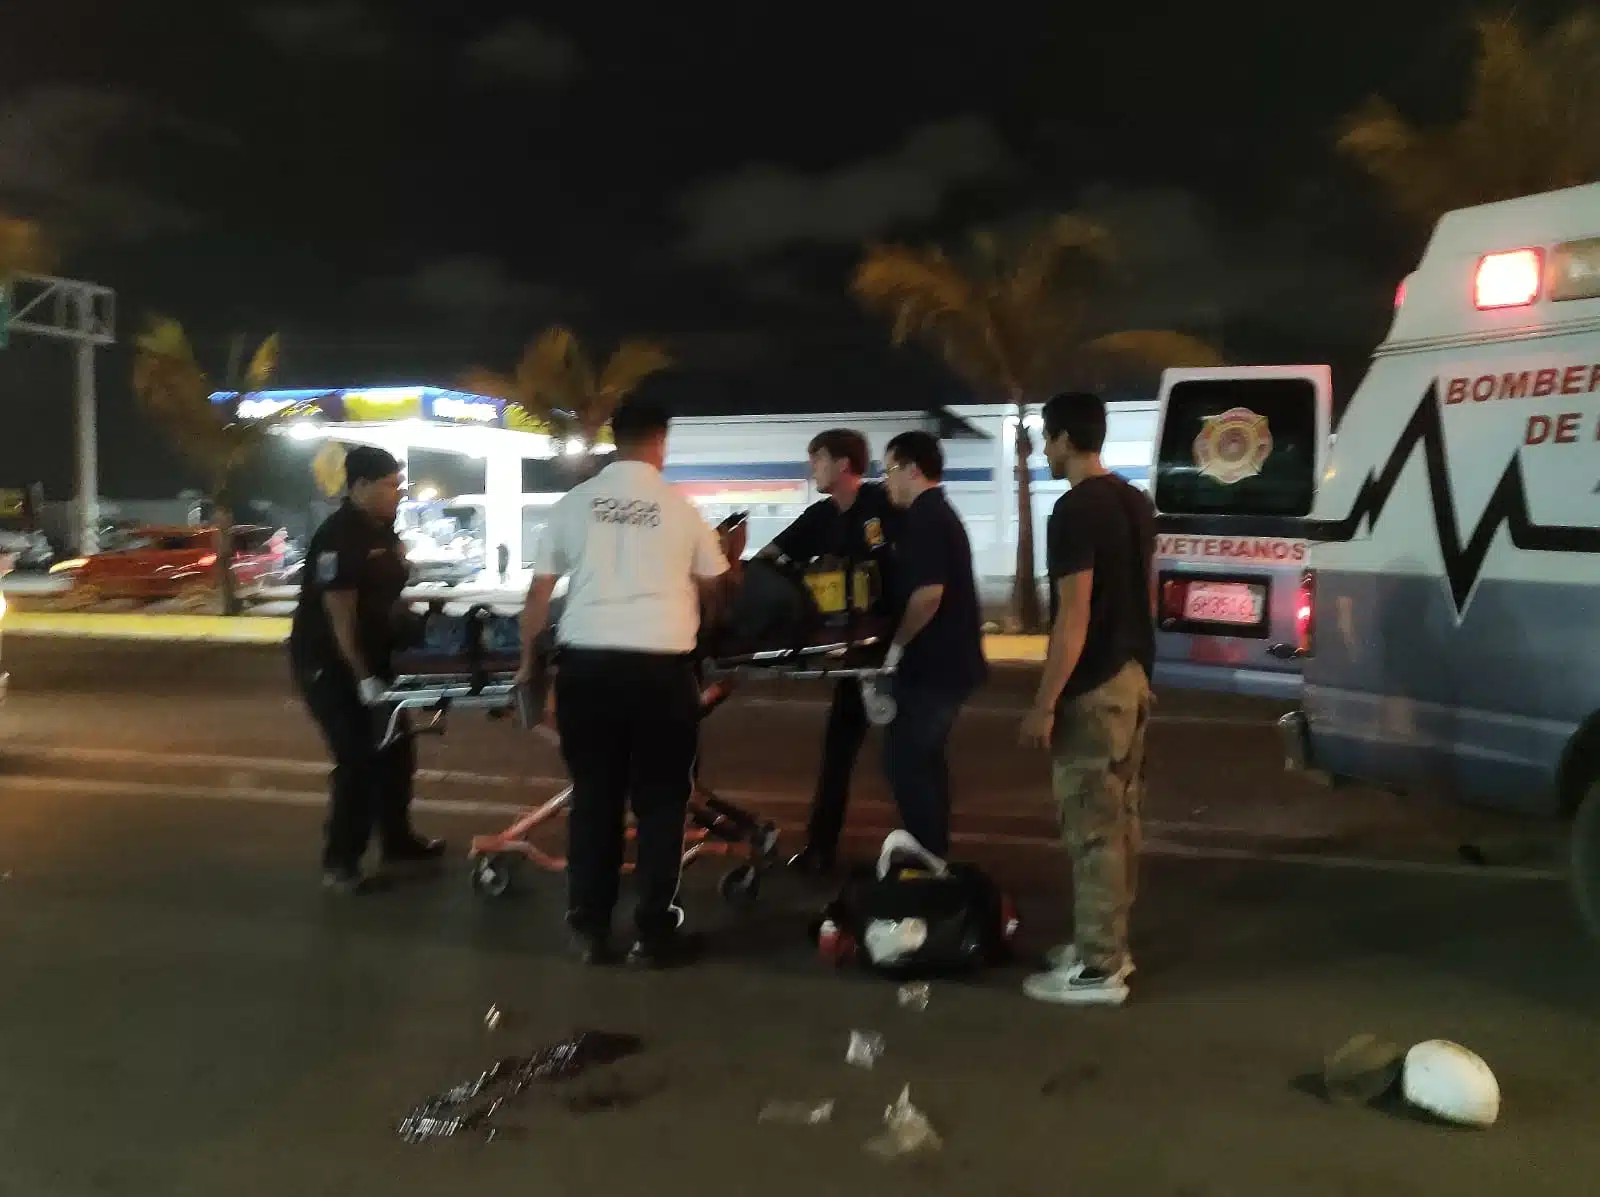 4 personas agarrando una camilla y otra parada a un lado sobre la carretera, y la parte trasera de una ambulancia con la puerta abierta, al fondo palmeras, carros y una estación de gas